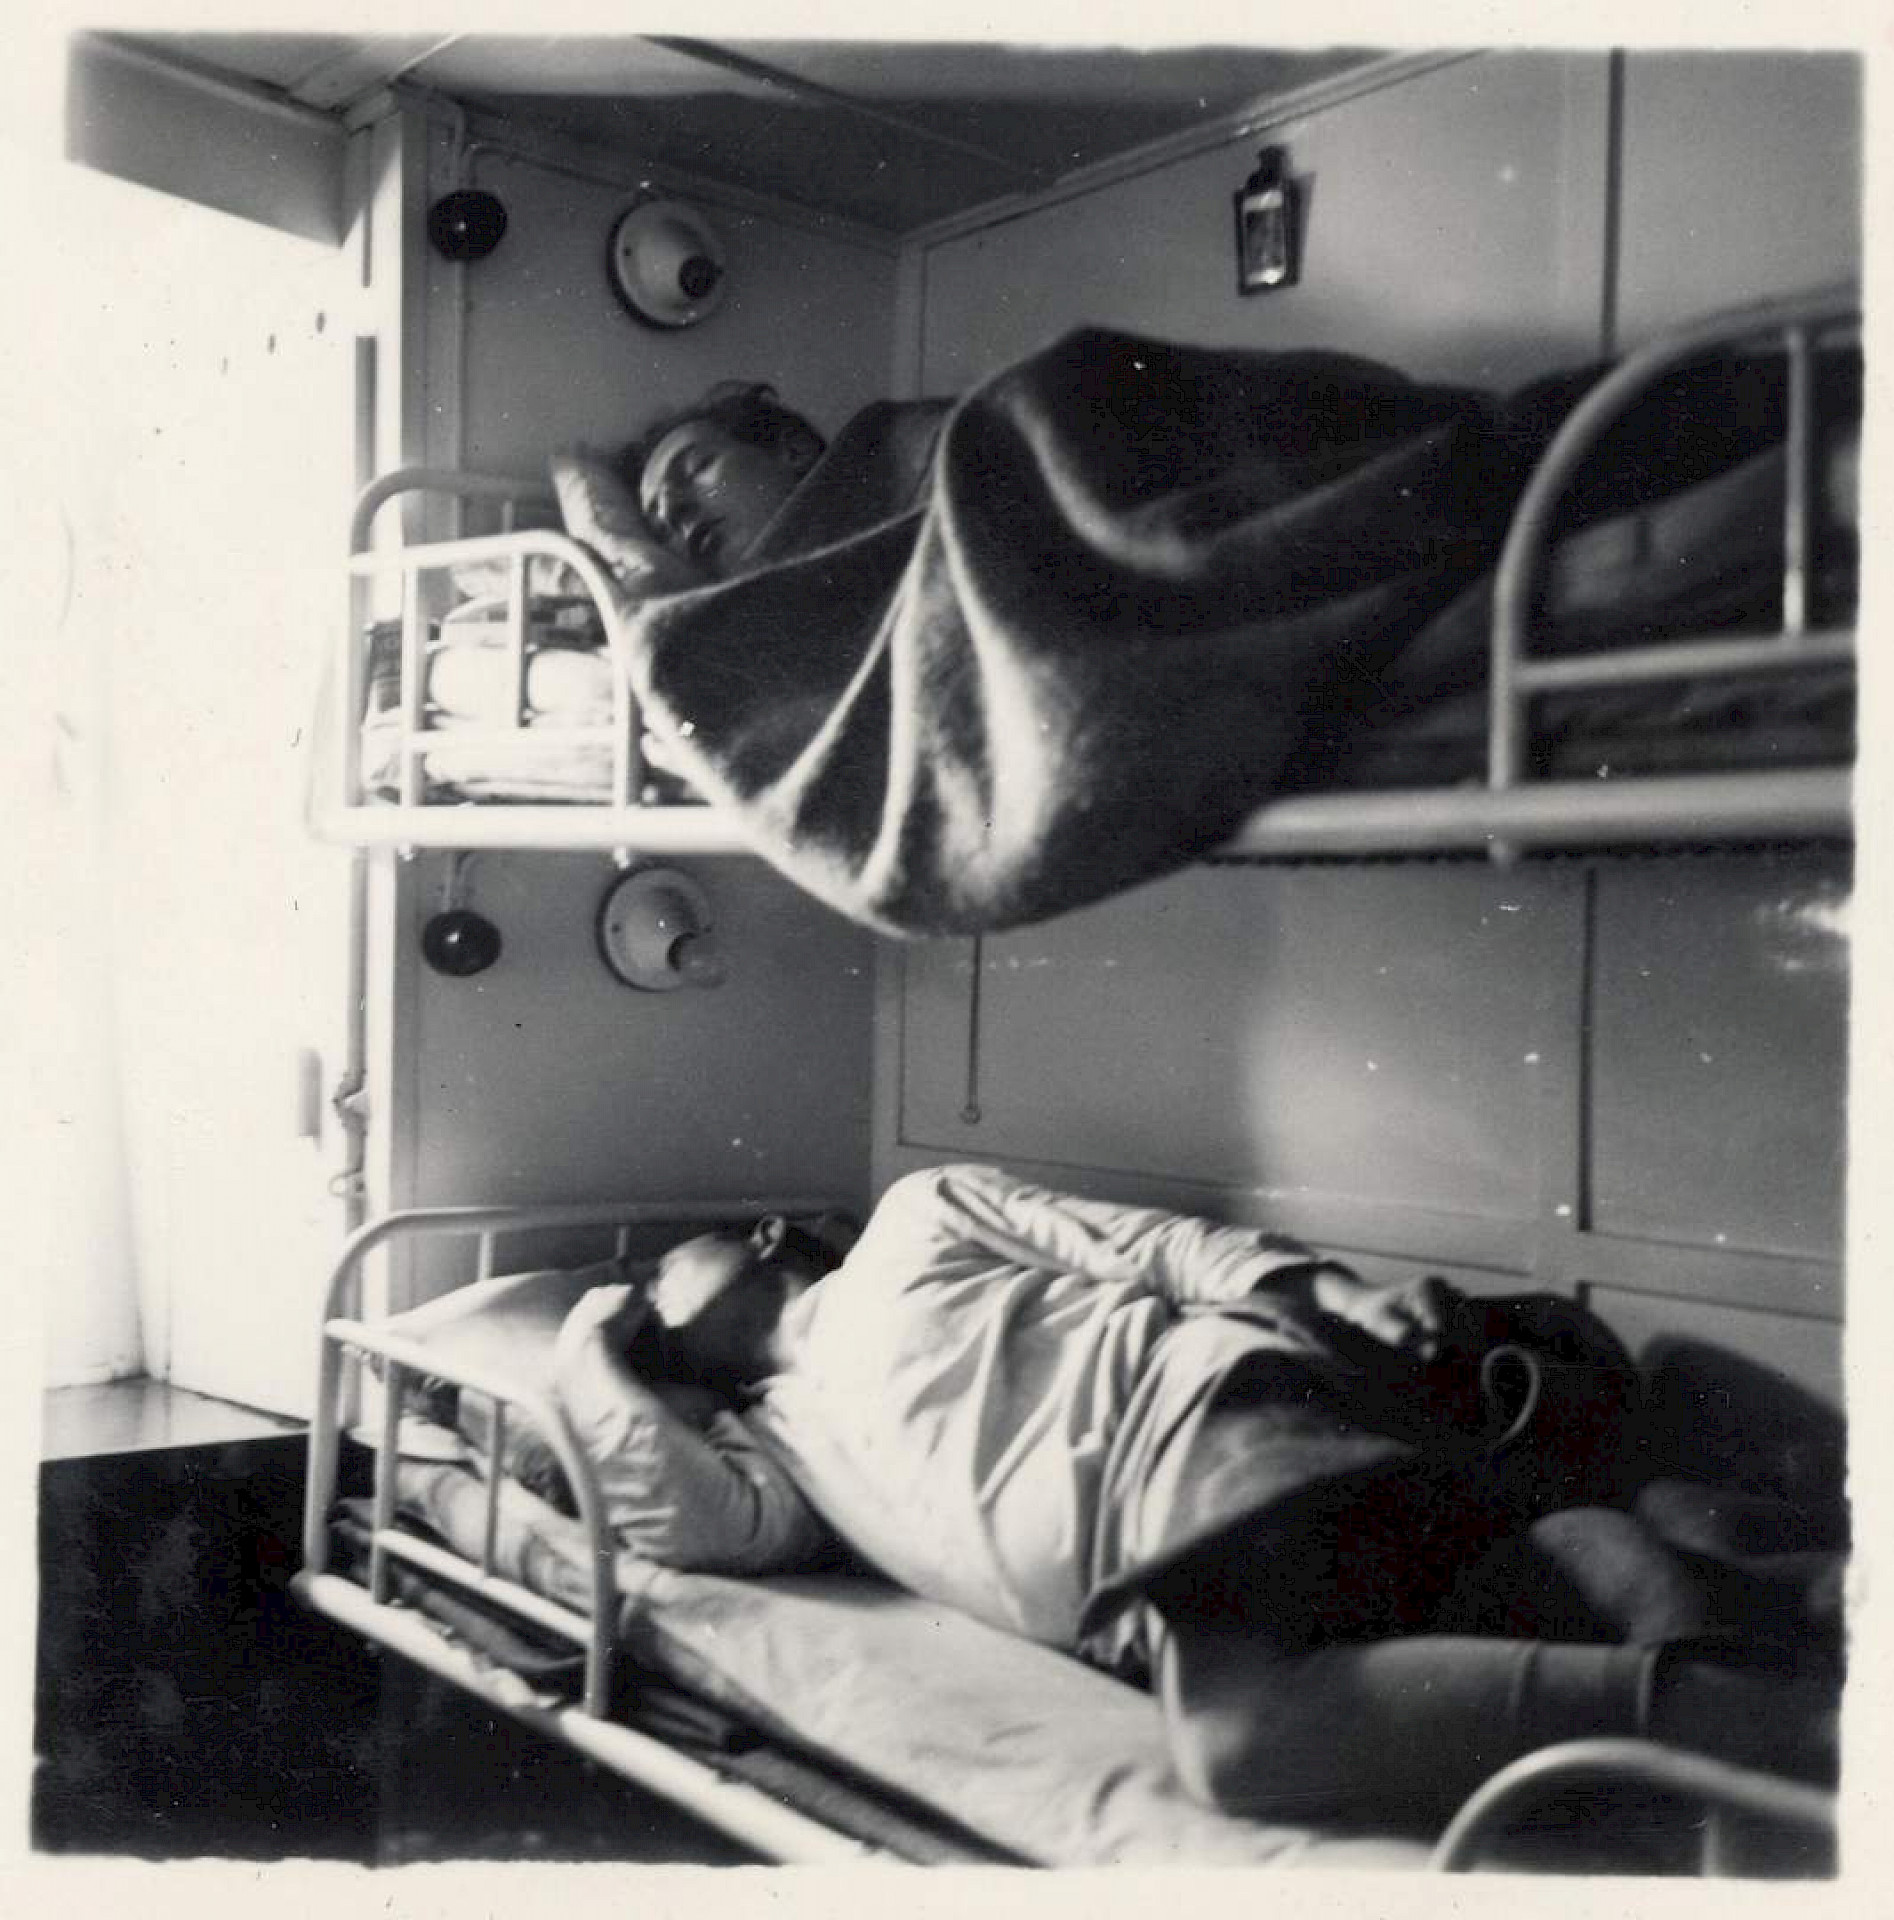 Vapaavahtia vietetään nukkuen höyrylaiva Myllykosken hytin kerrossängyssä.